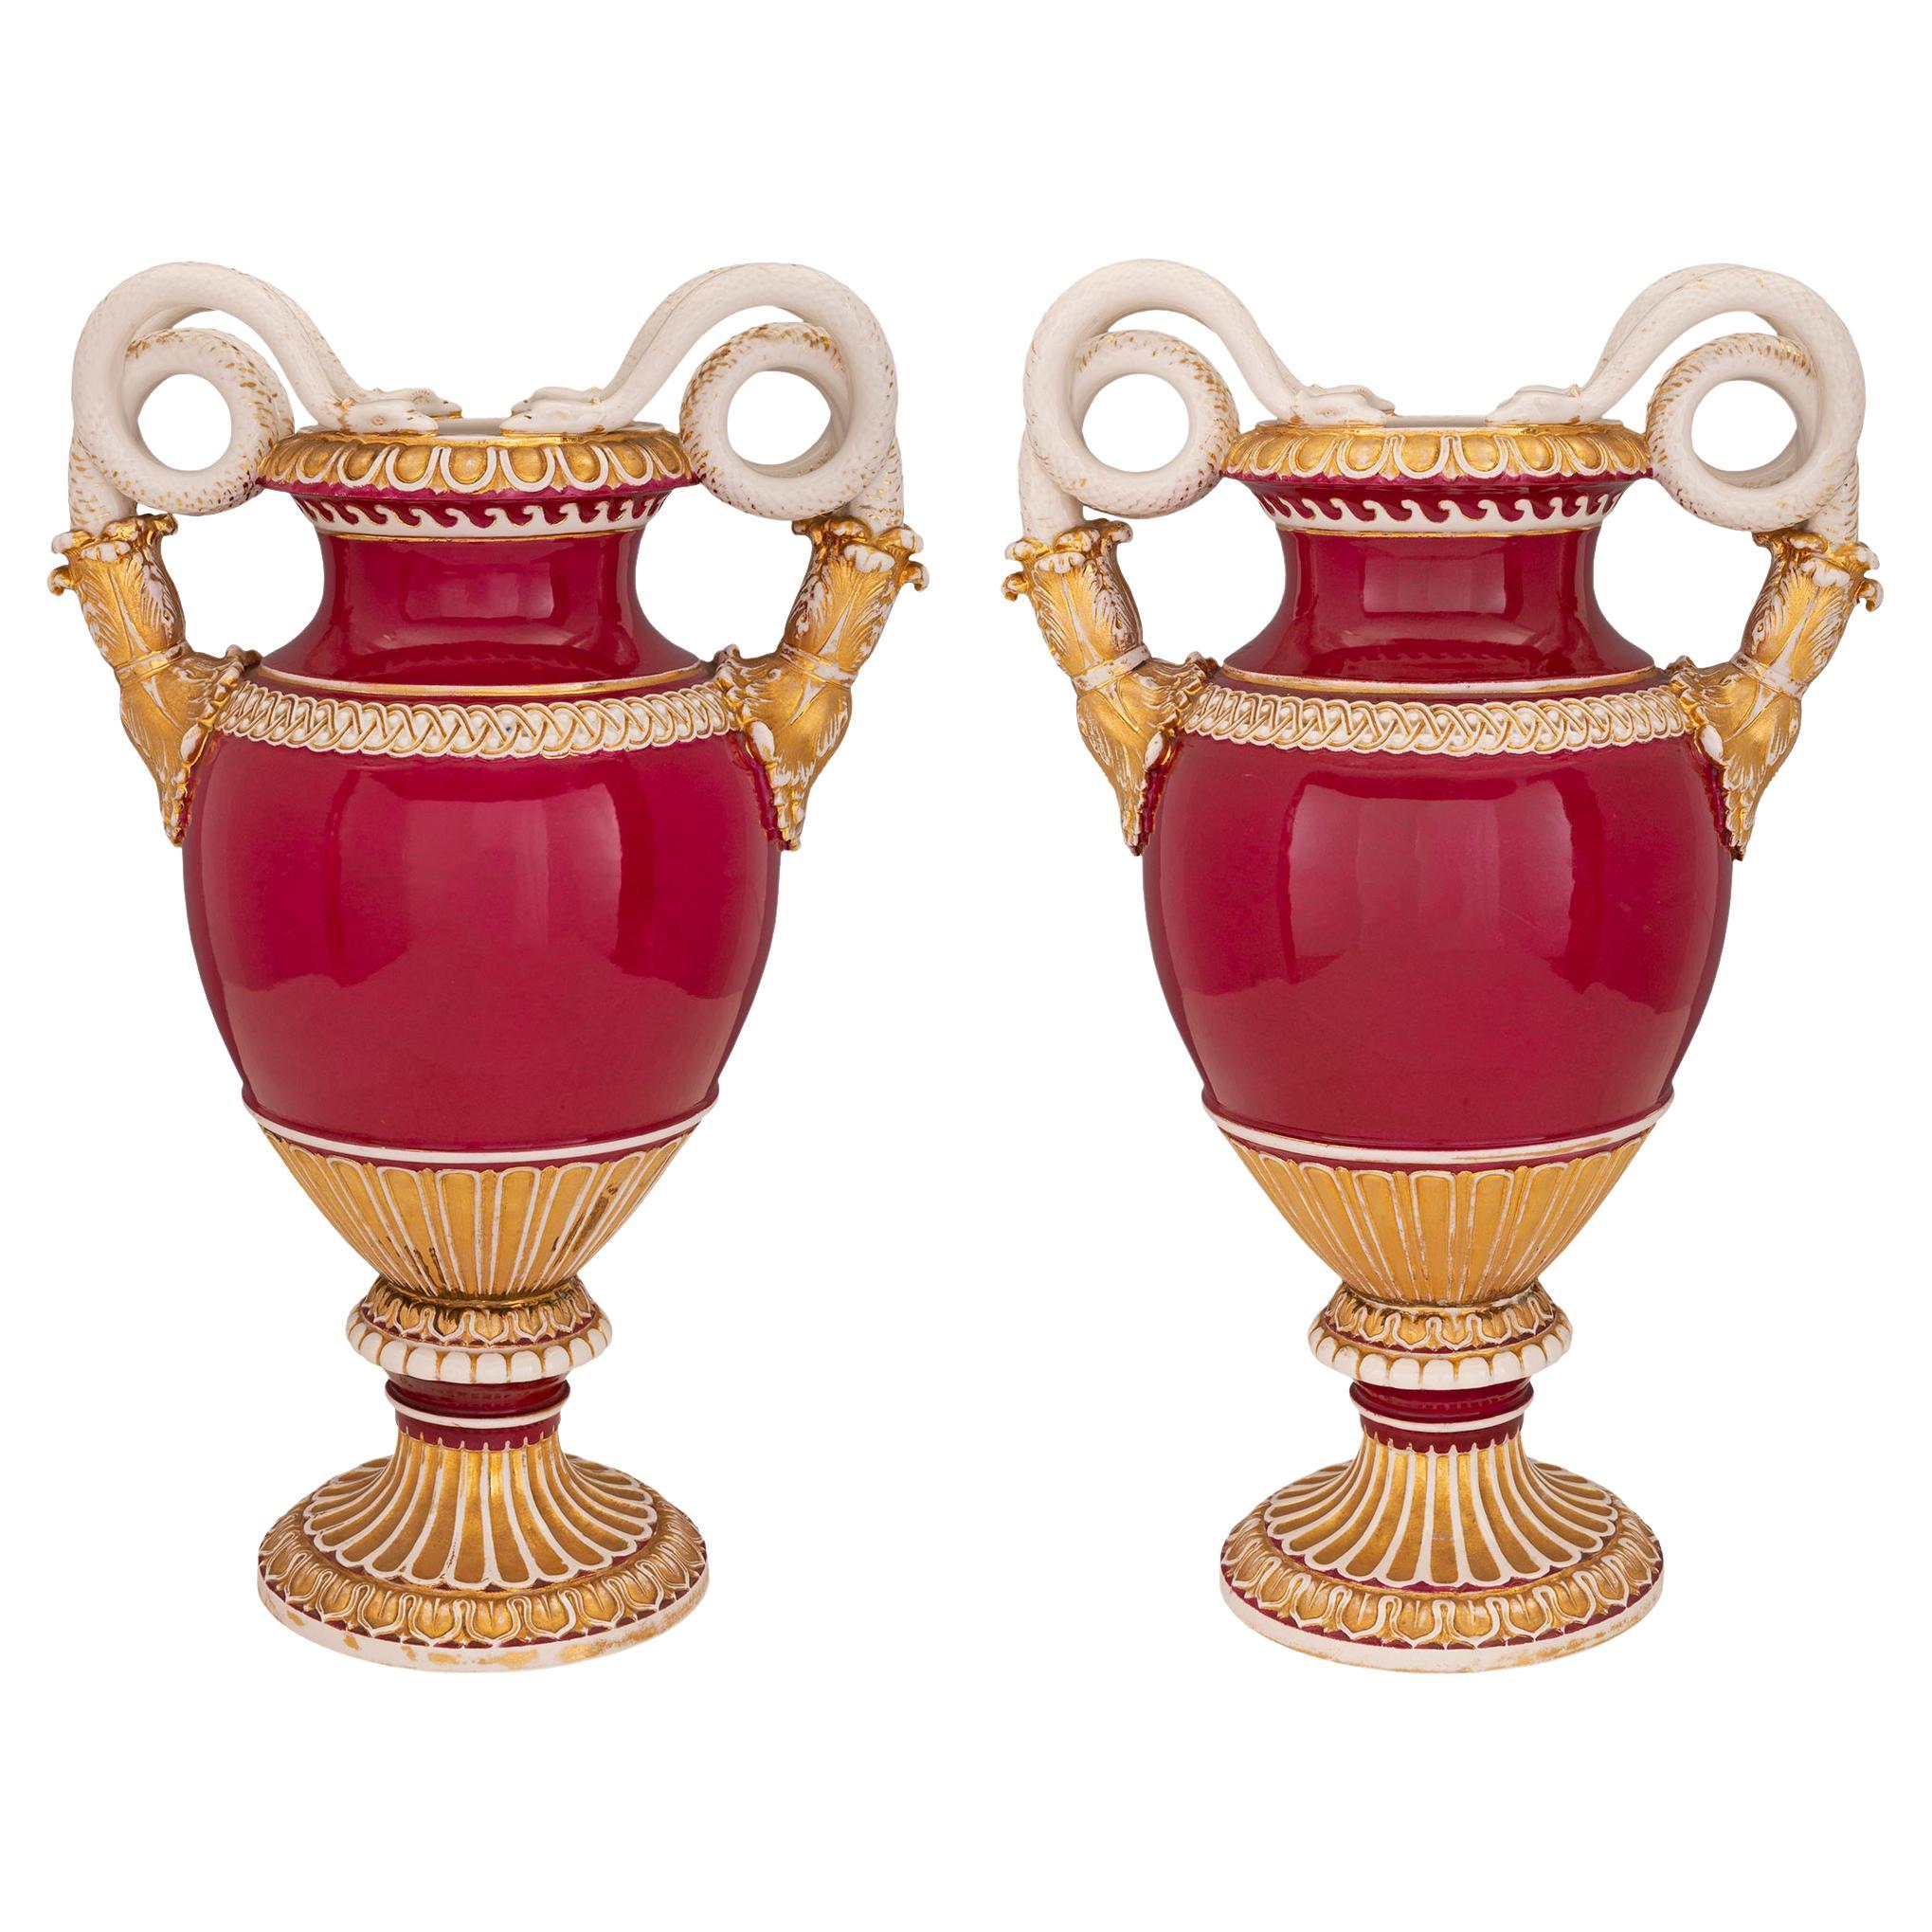 Paire d'urnes en porcelaine de St. Meissen néo-classique allemande du 19ème siècle